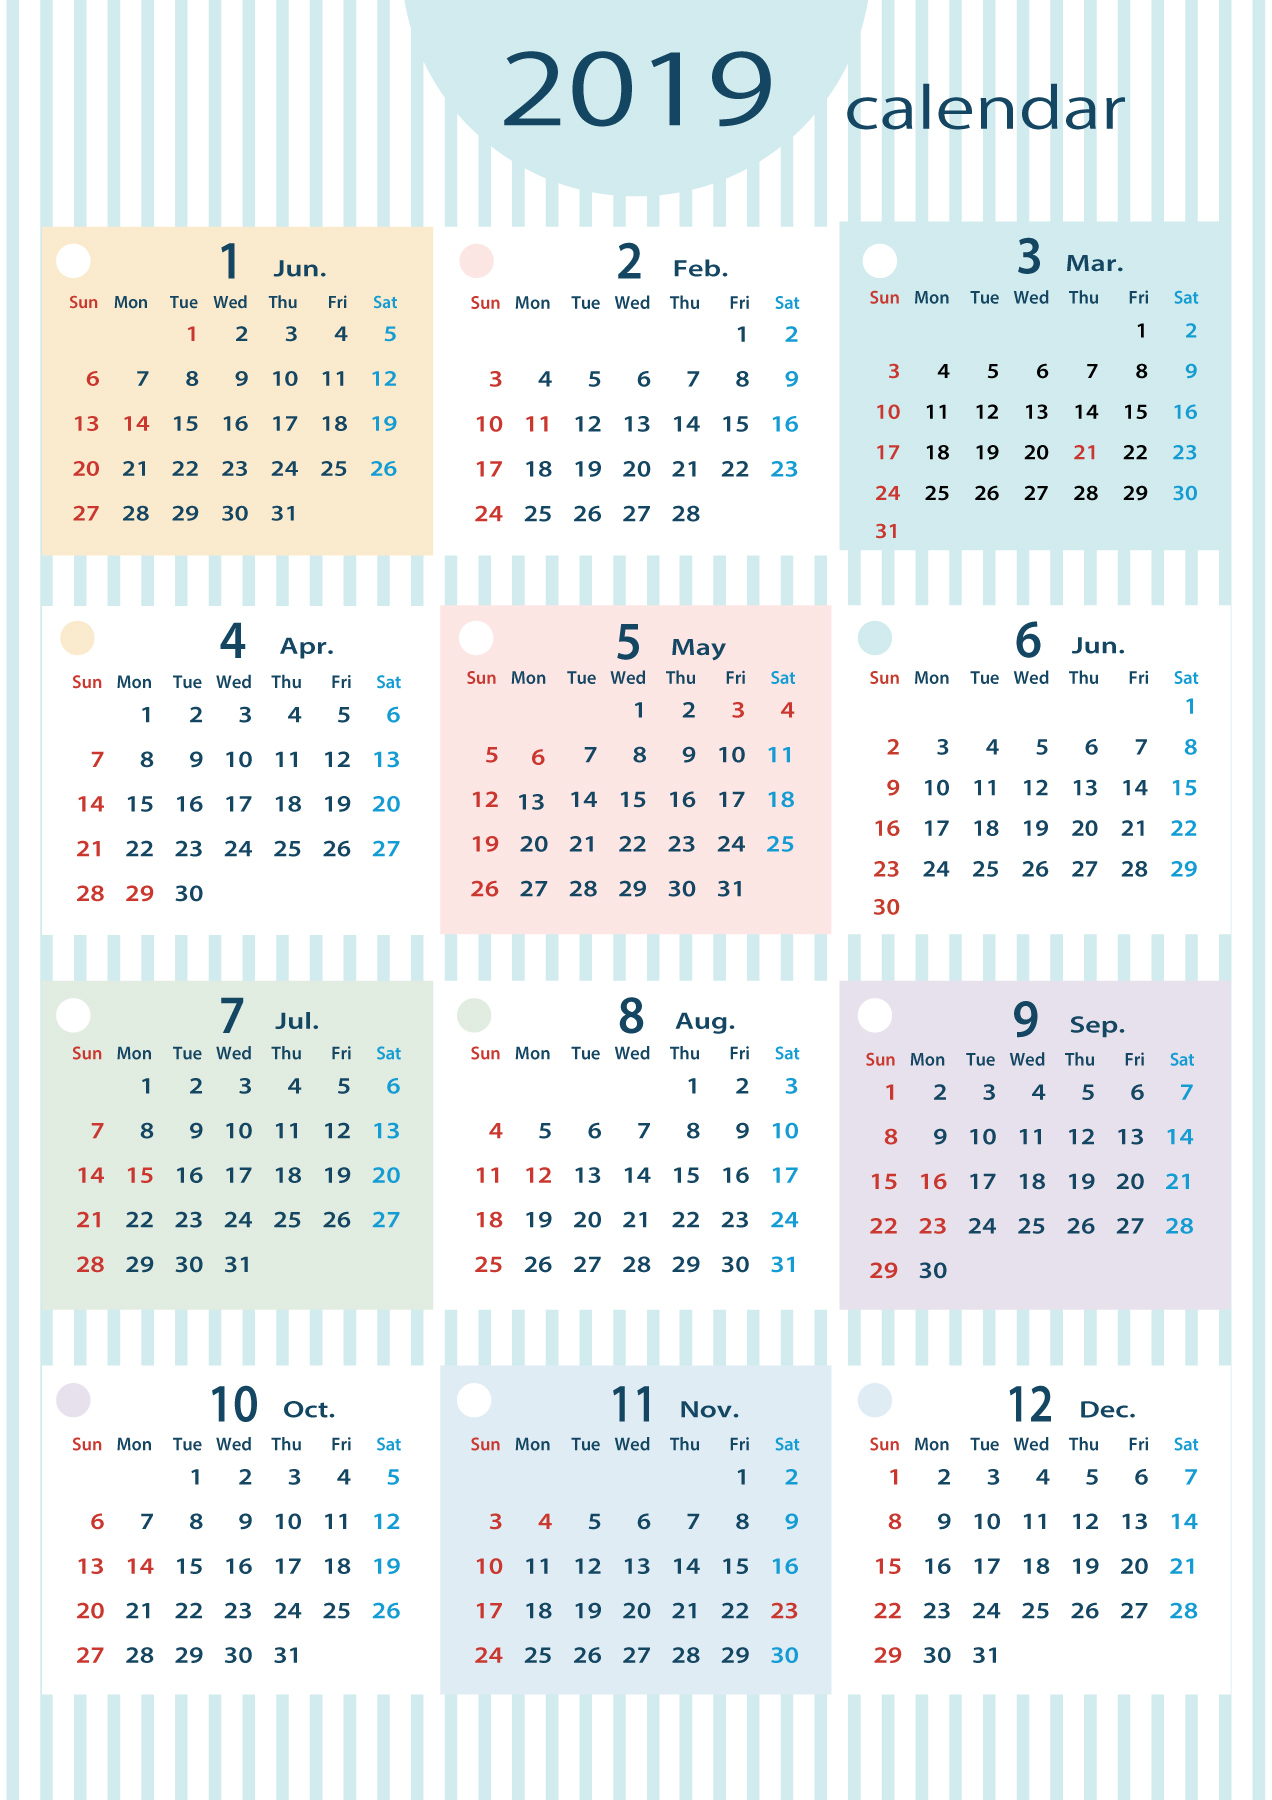 No 縦向きの1月から12月までの1年間分を入れた年間カレンダー Blair